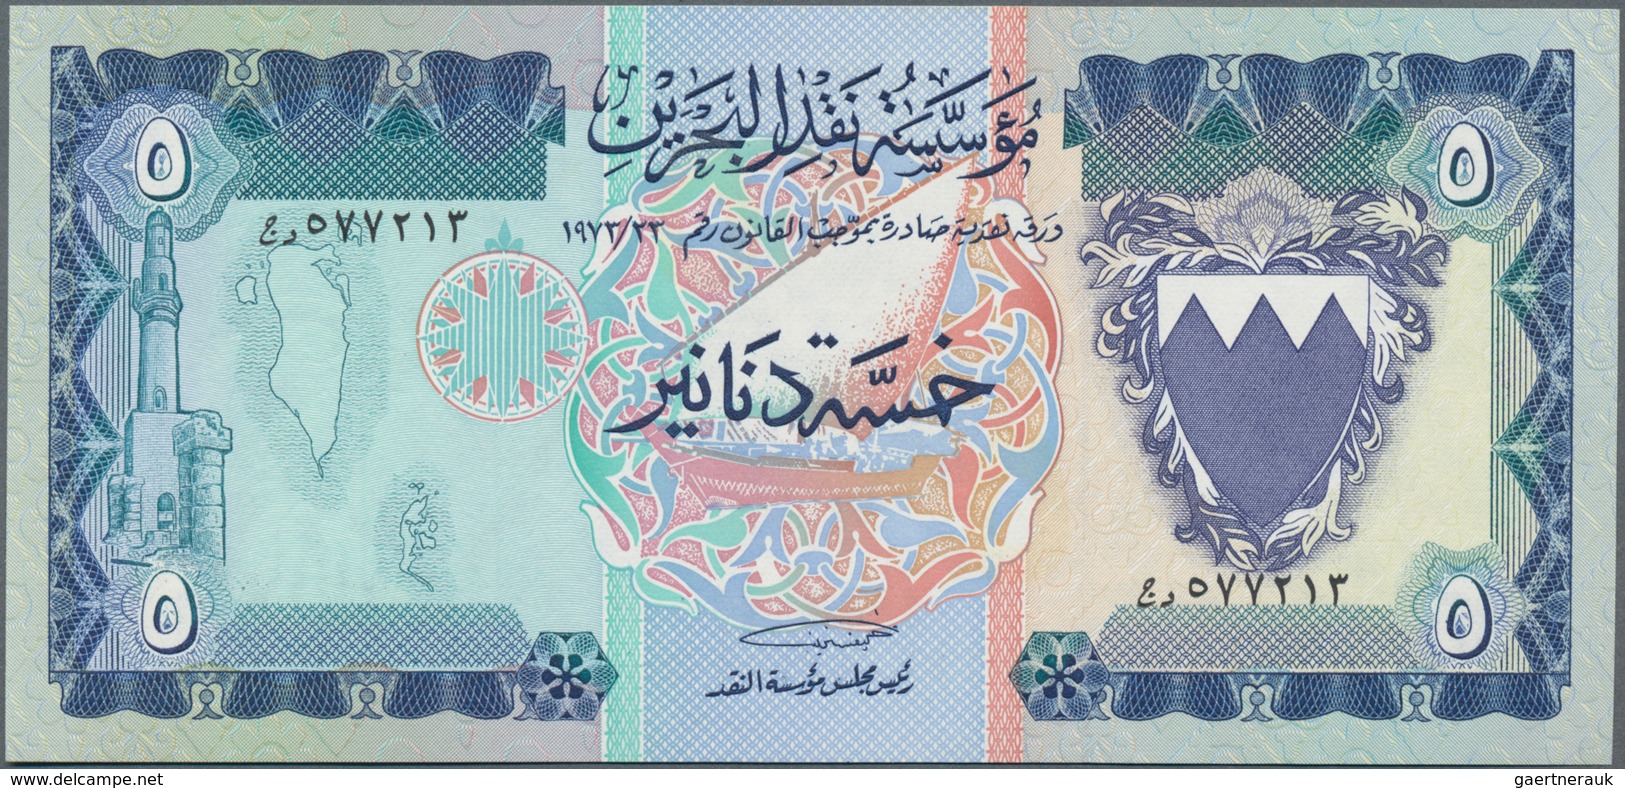 Bahrain: Bahrain Monetary Agency 5 Dinars L.1973, P.8A In Perfect UNC Condition. - Bahreïn